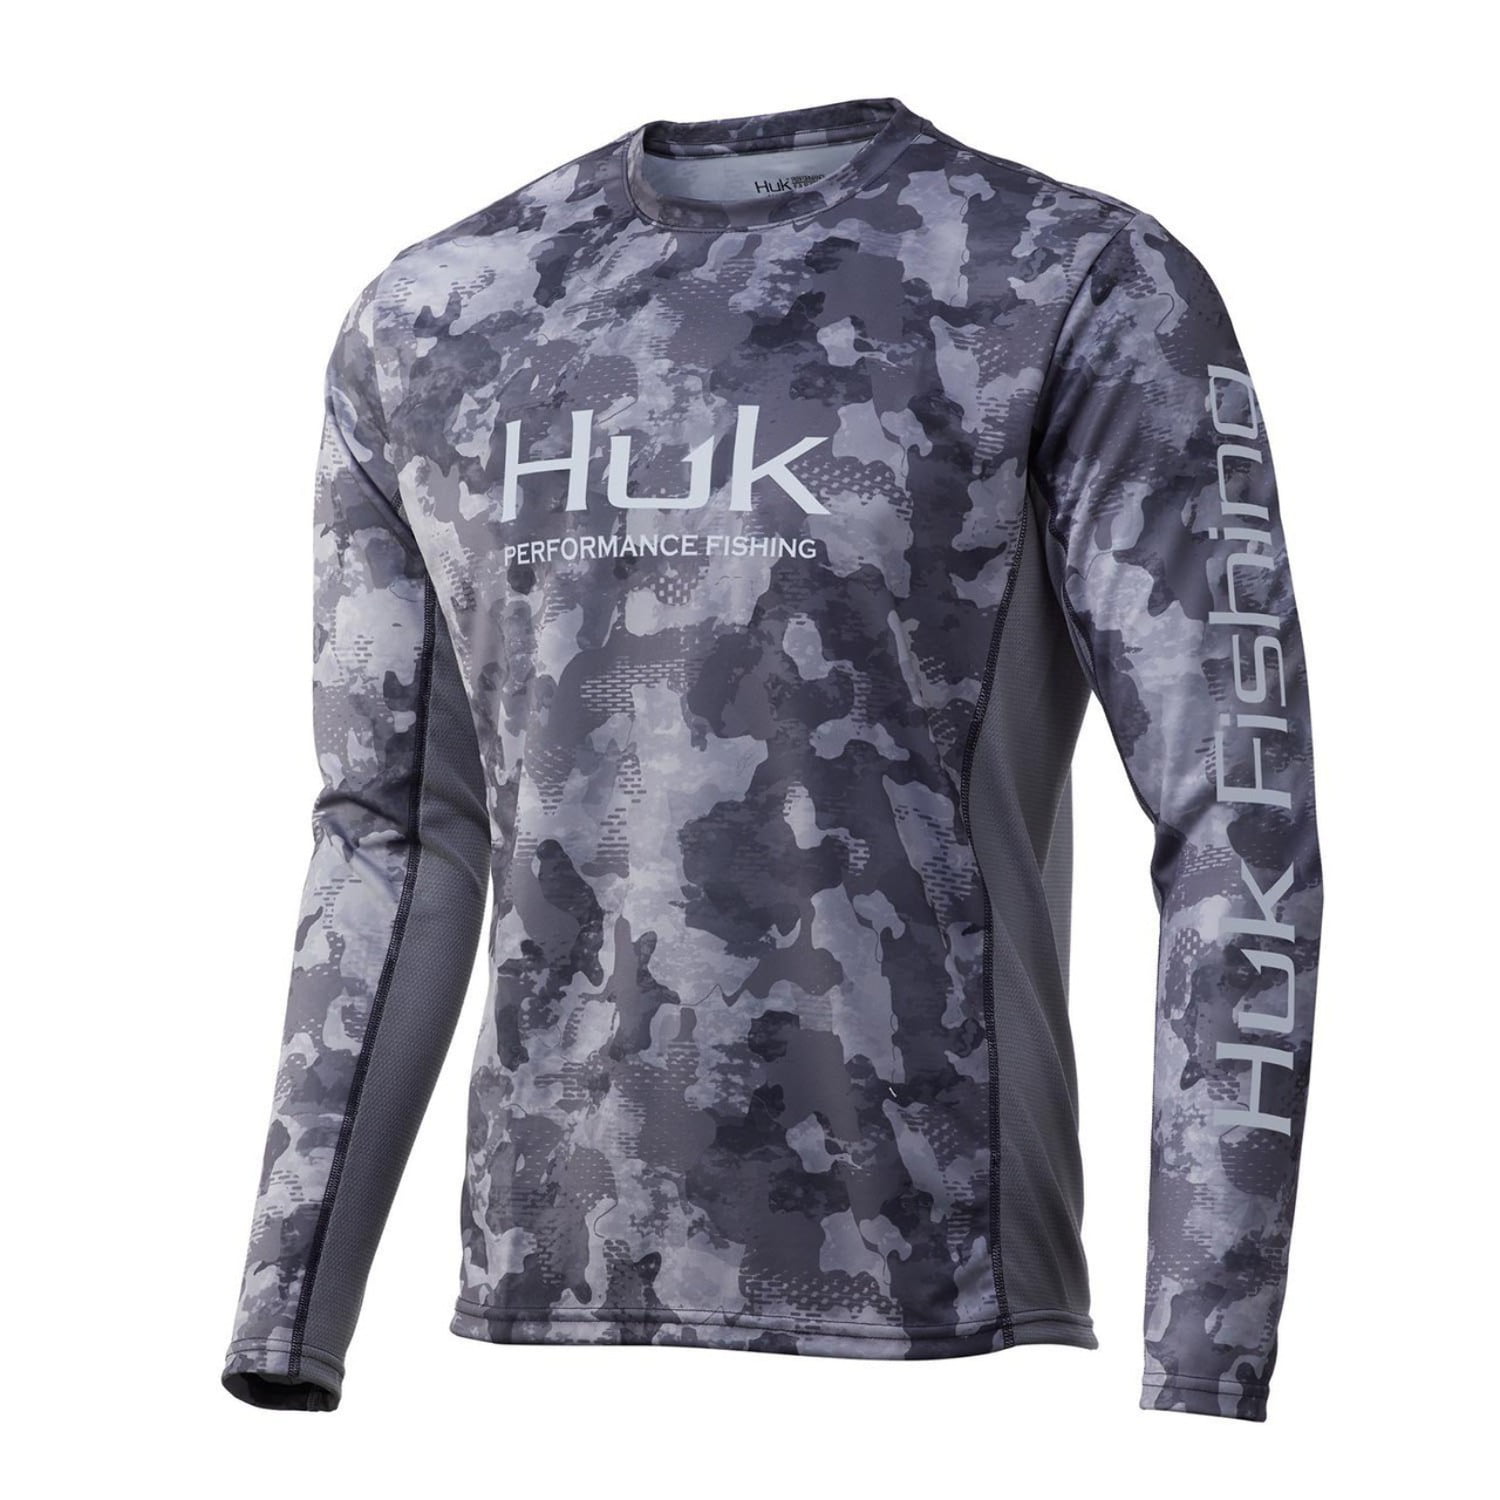 Huk shirt xxxl performance - Gem